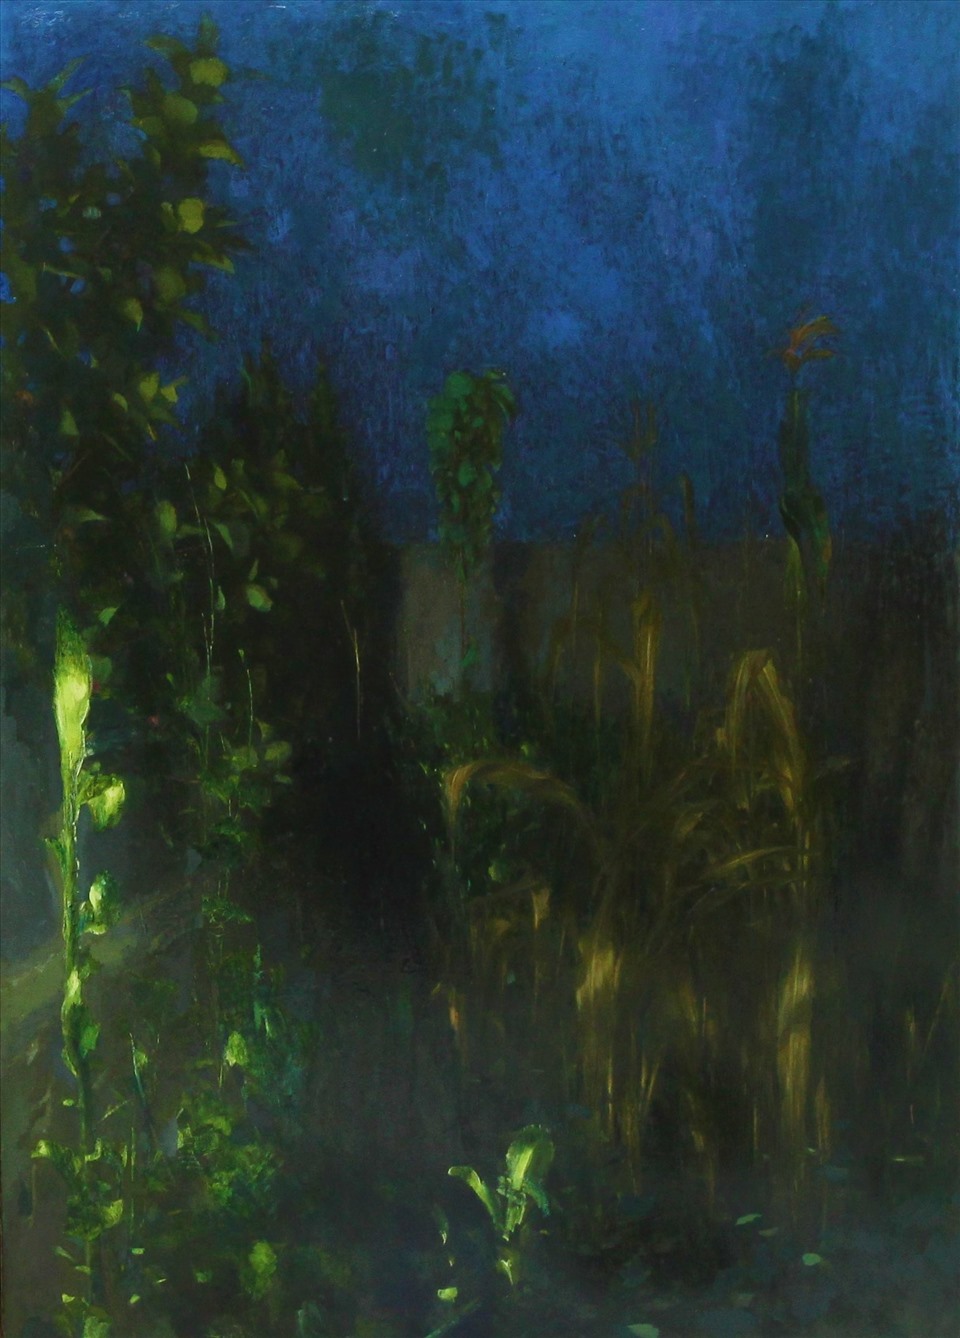 Khuya xuống vườn, sơn dầu, 125 x 82cm, 2008. Ảnh Ngọc Đông.